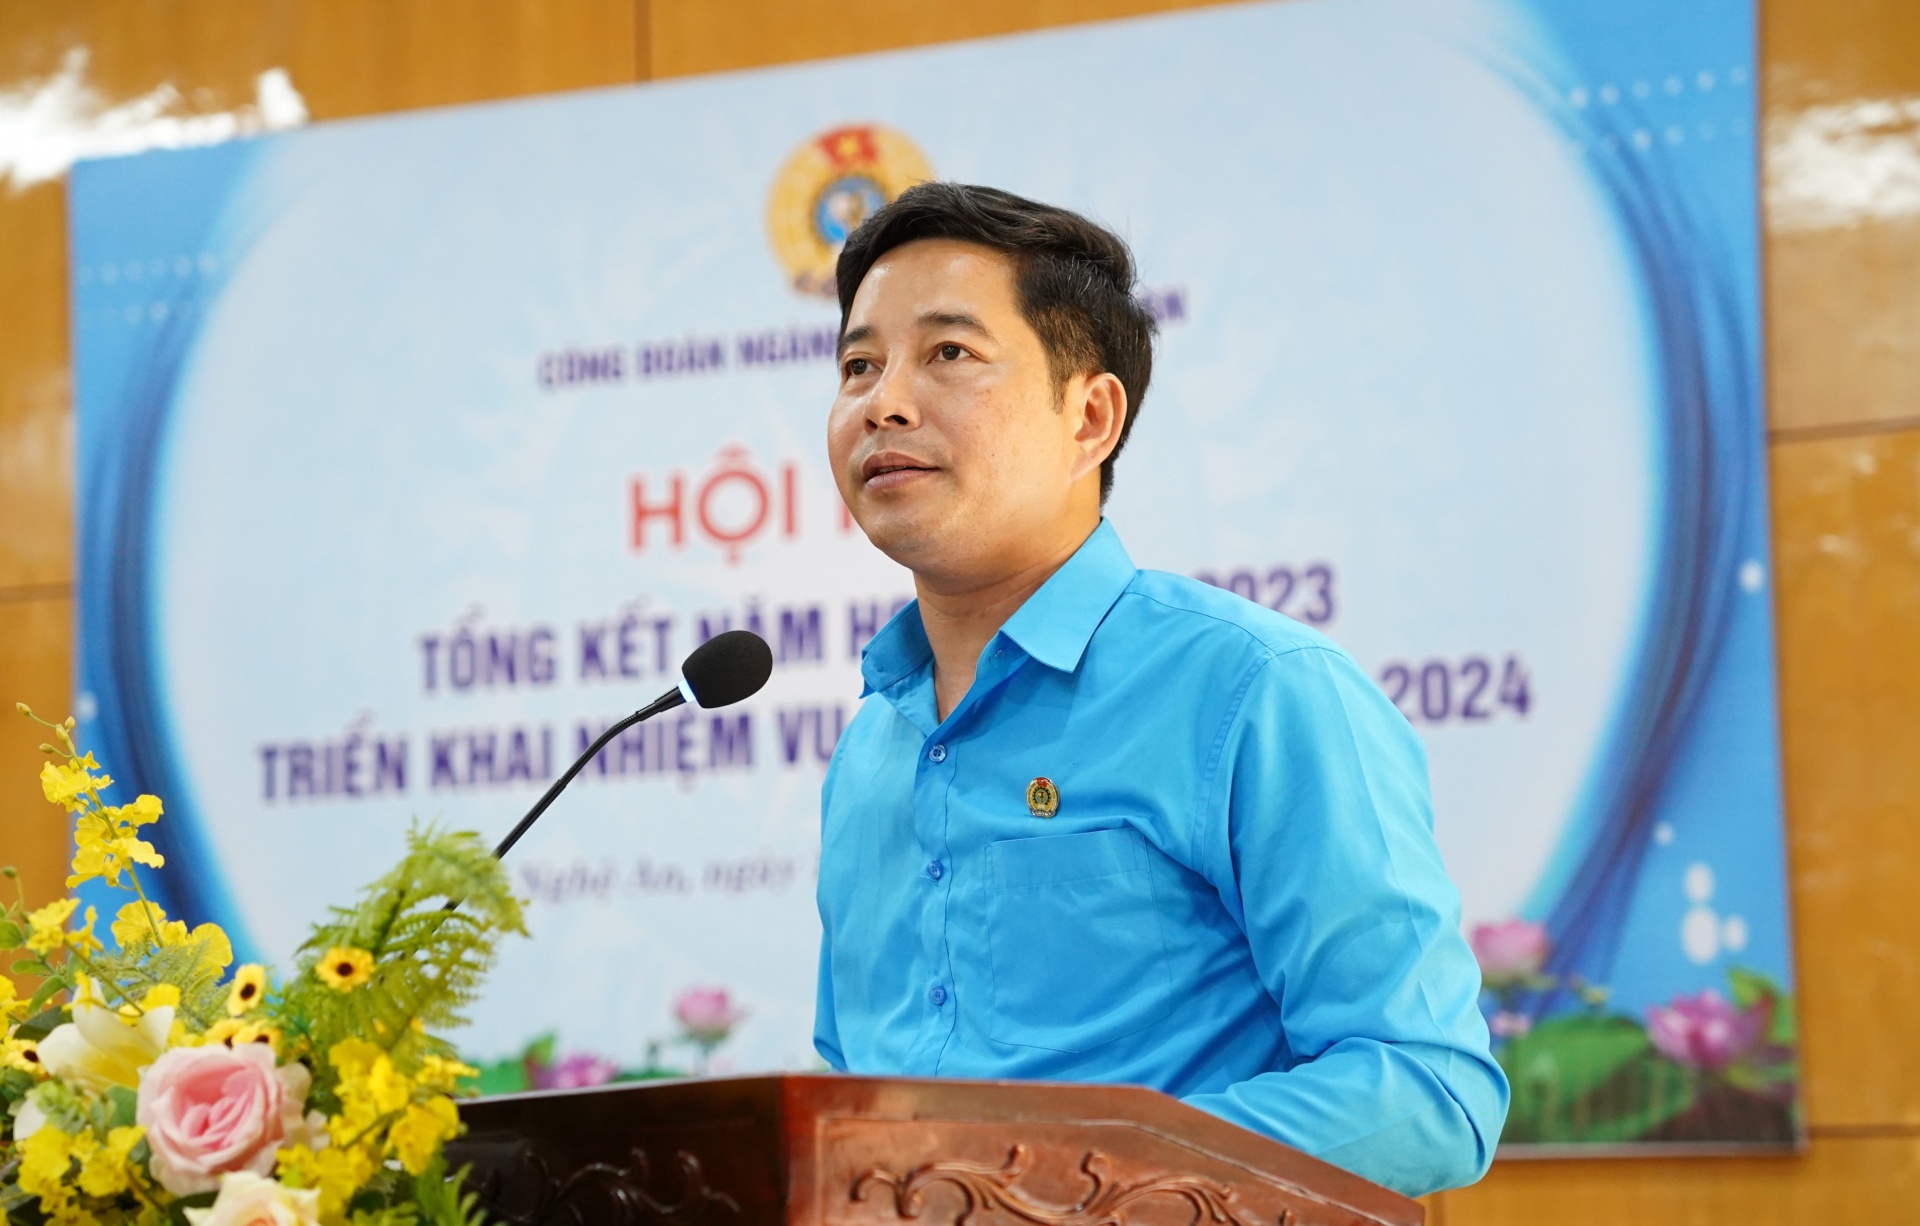 Ông Đặng Văn Hải – Chủ tịch Công đoàn ngành Giáo dục phát biểu khai mạc Hội nghị. Ảnh: Hải Đăng